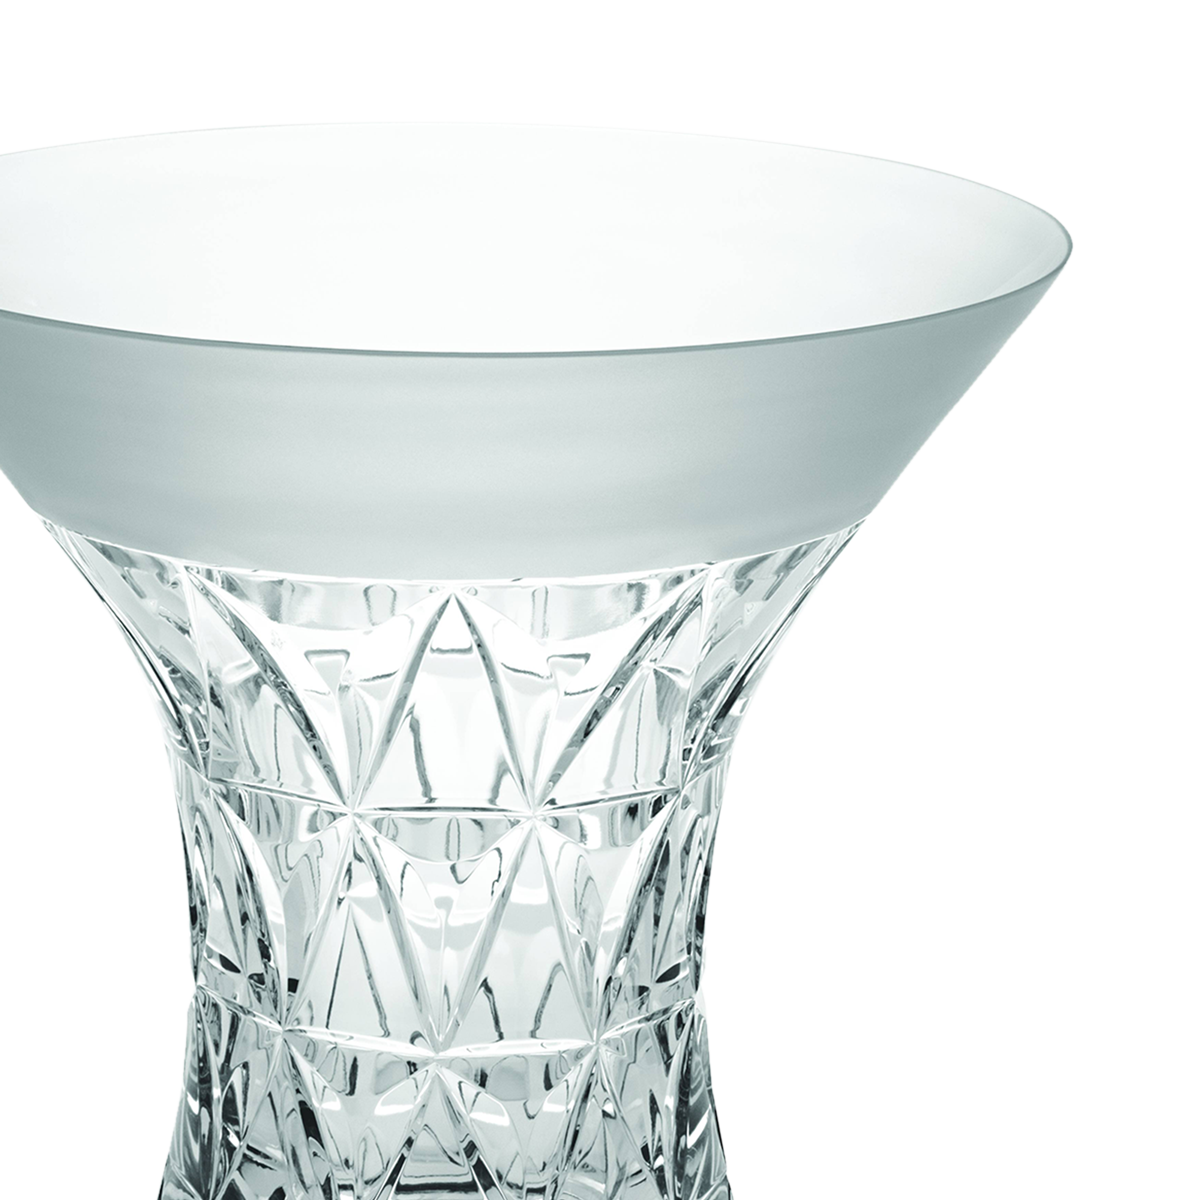 Garland Vase